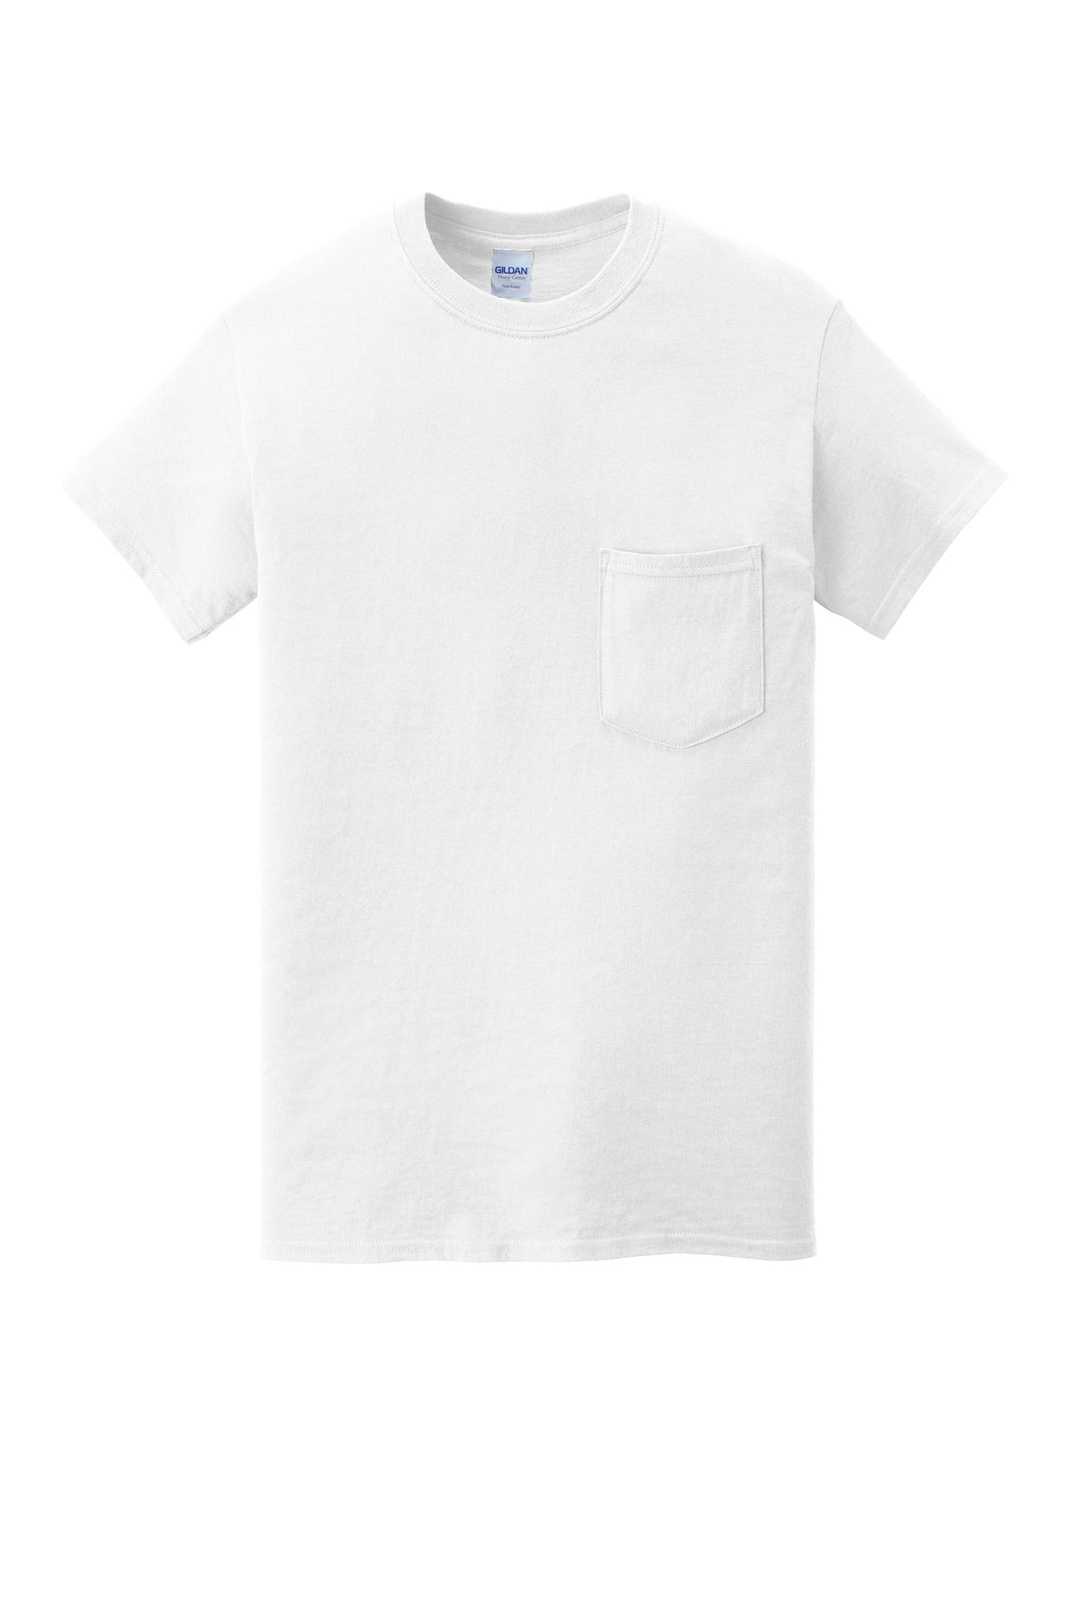 Gildan 5300 Heavy Cotton 100% Cotton Pocket T-Shirt - White - HIT a Double